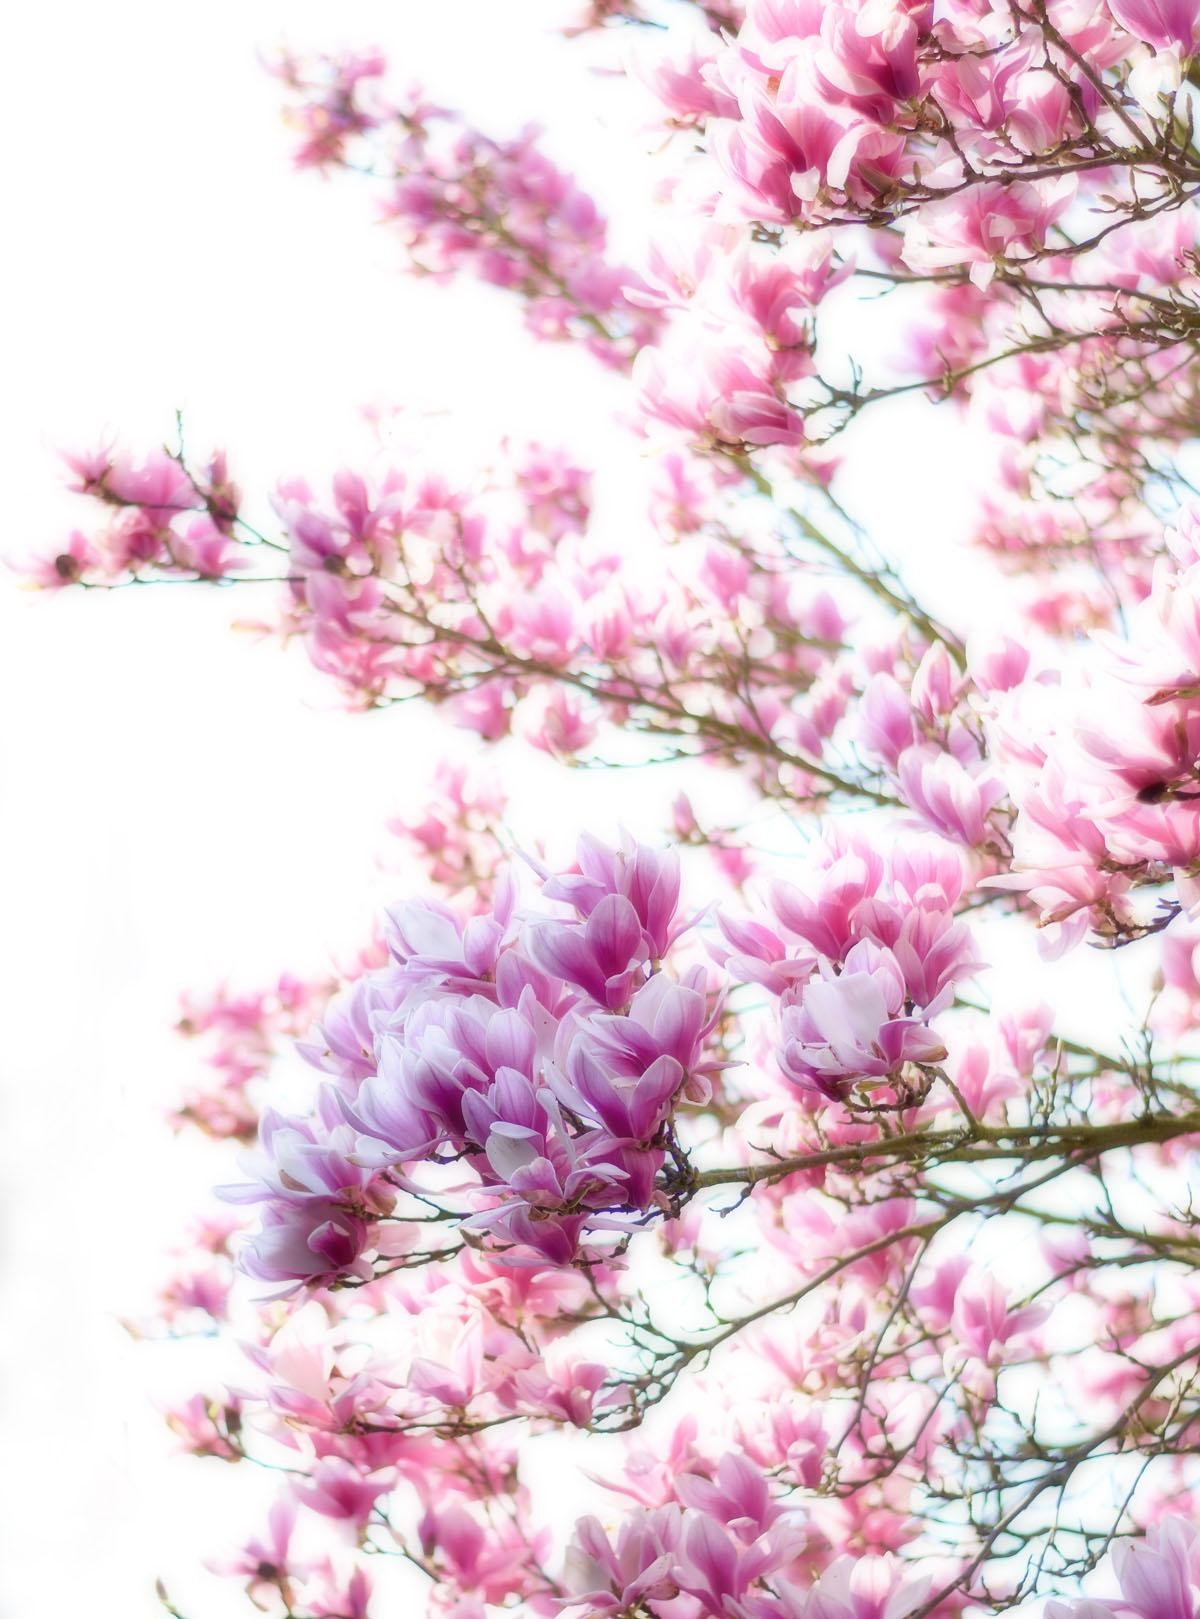 Wunderschöne Magnolien...
#magnolie #flowerpower #frühling 